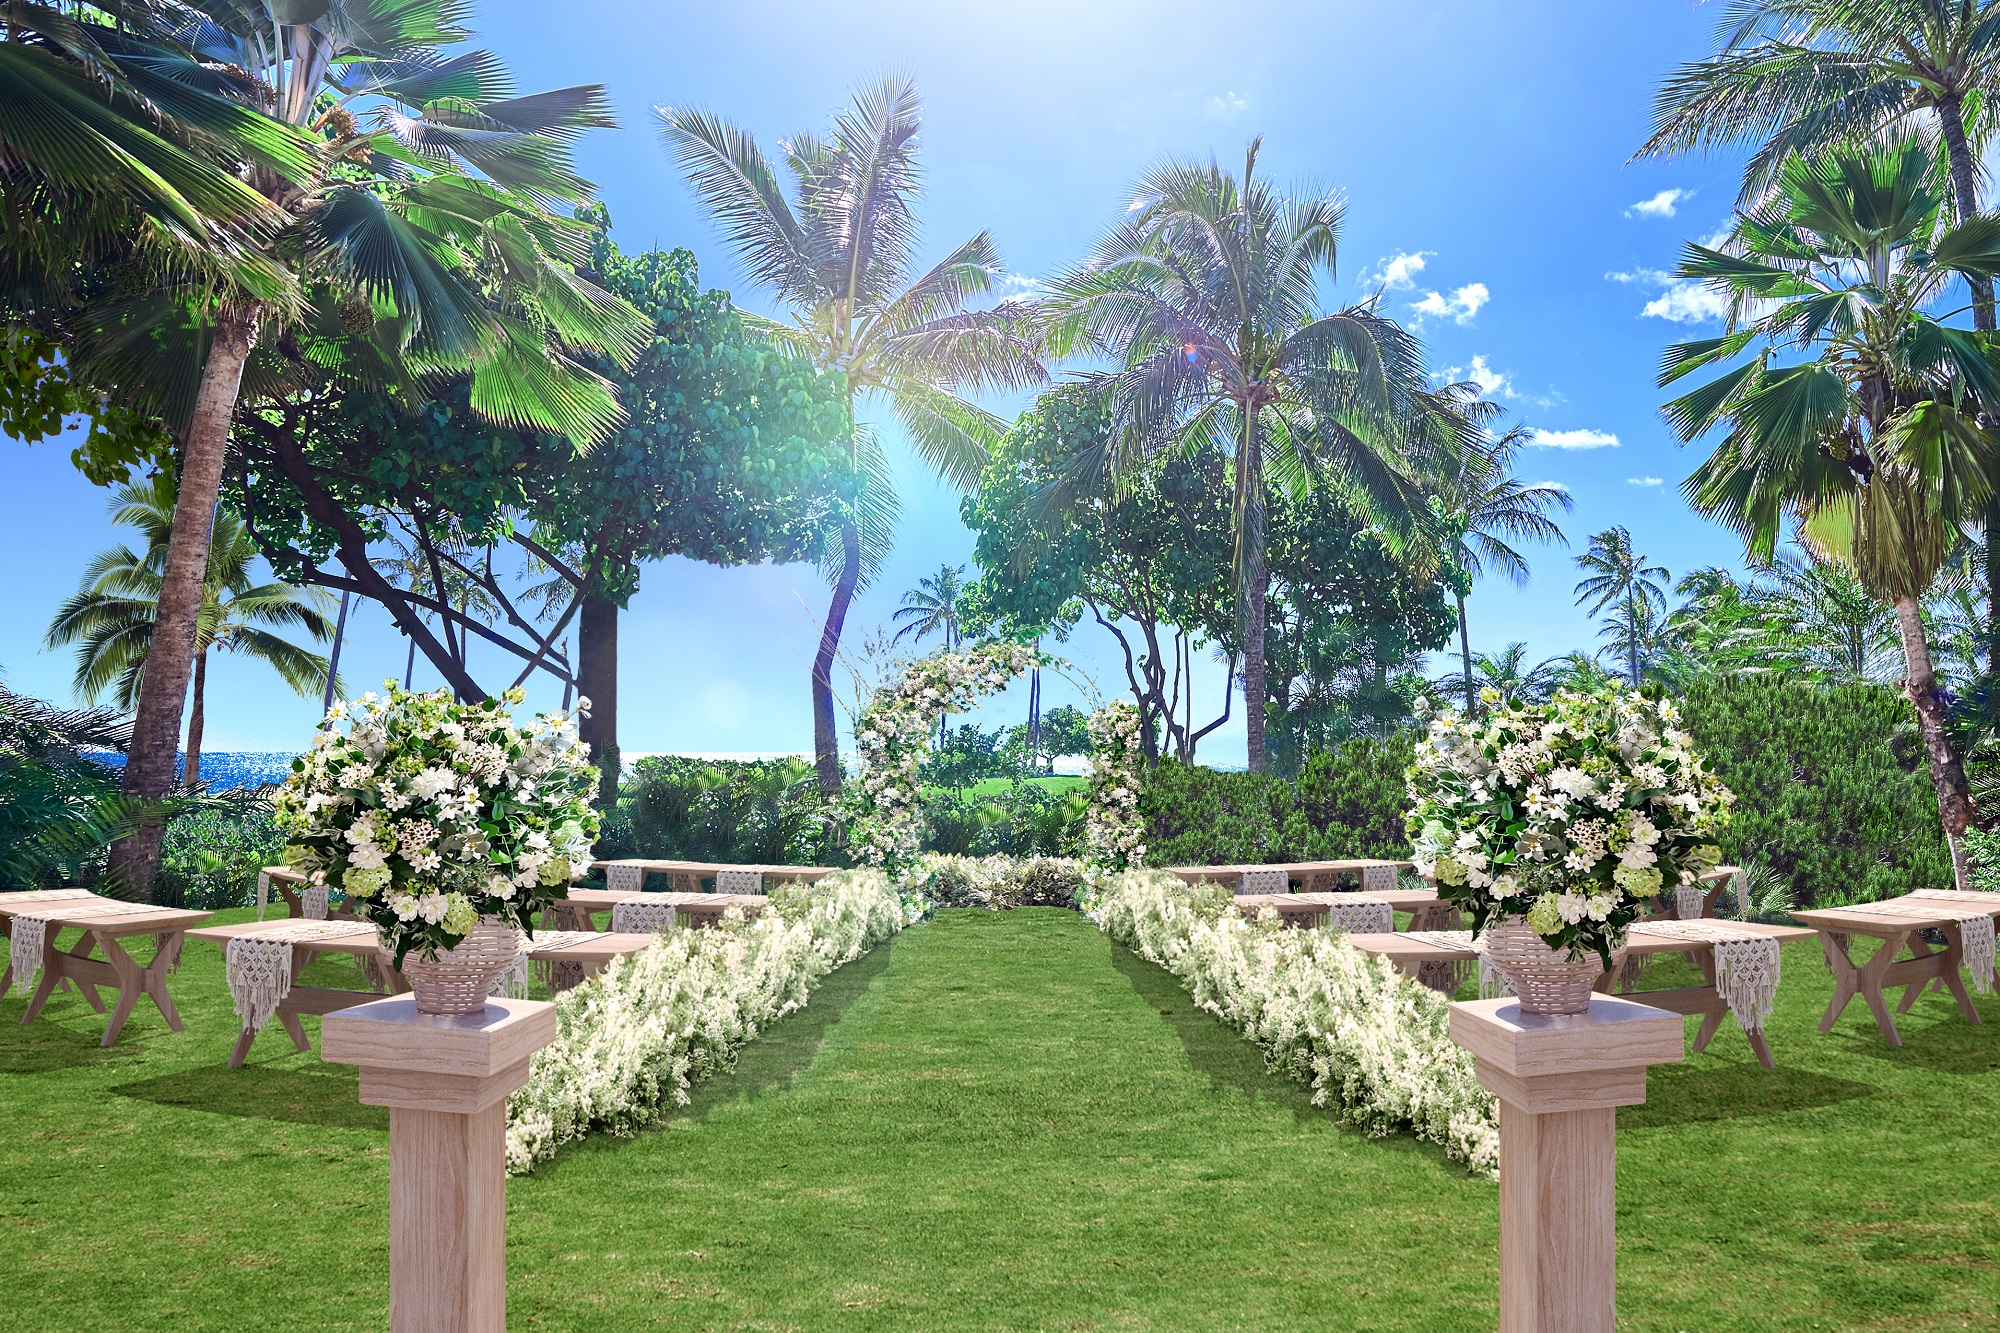 ハワイの人気挙式施設リニューアル記念キャンペーン！
「コオリナ アクア・マリーナ」ガーデンウェディングを
2020年6月～9月挙式限定で1組にプレゼント
～海をすぐ近くに感じながら、ハワイの大自然で誓うセレモニー～
